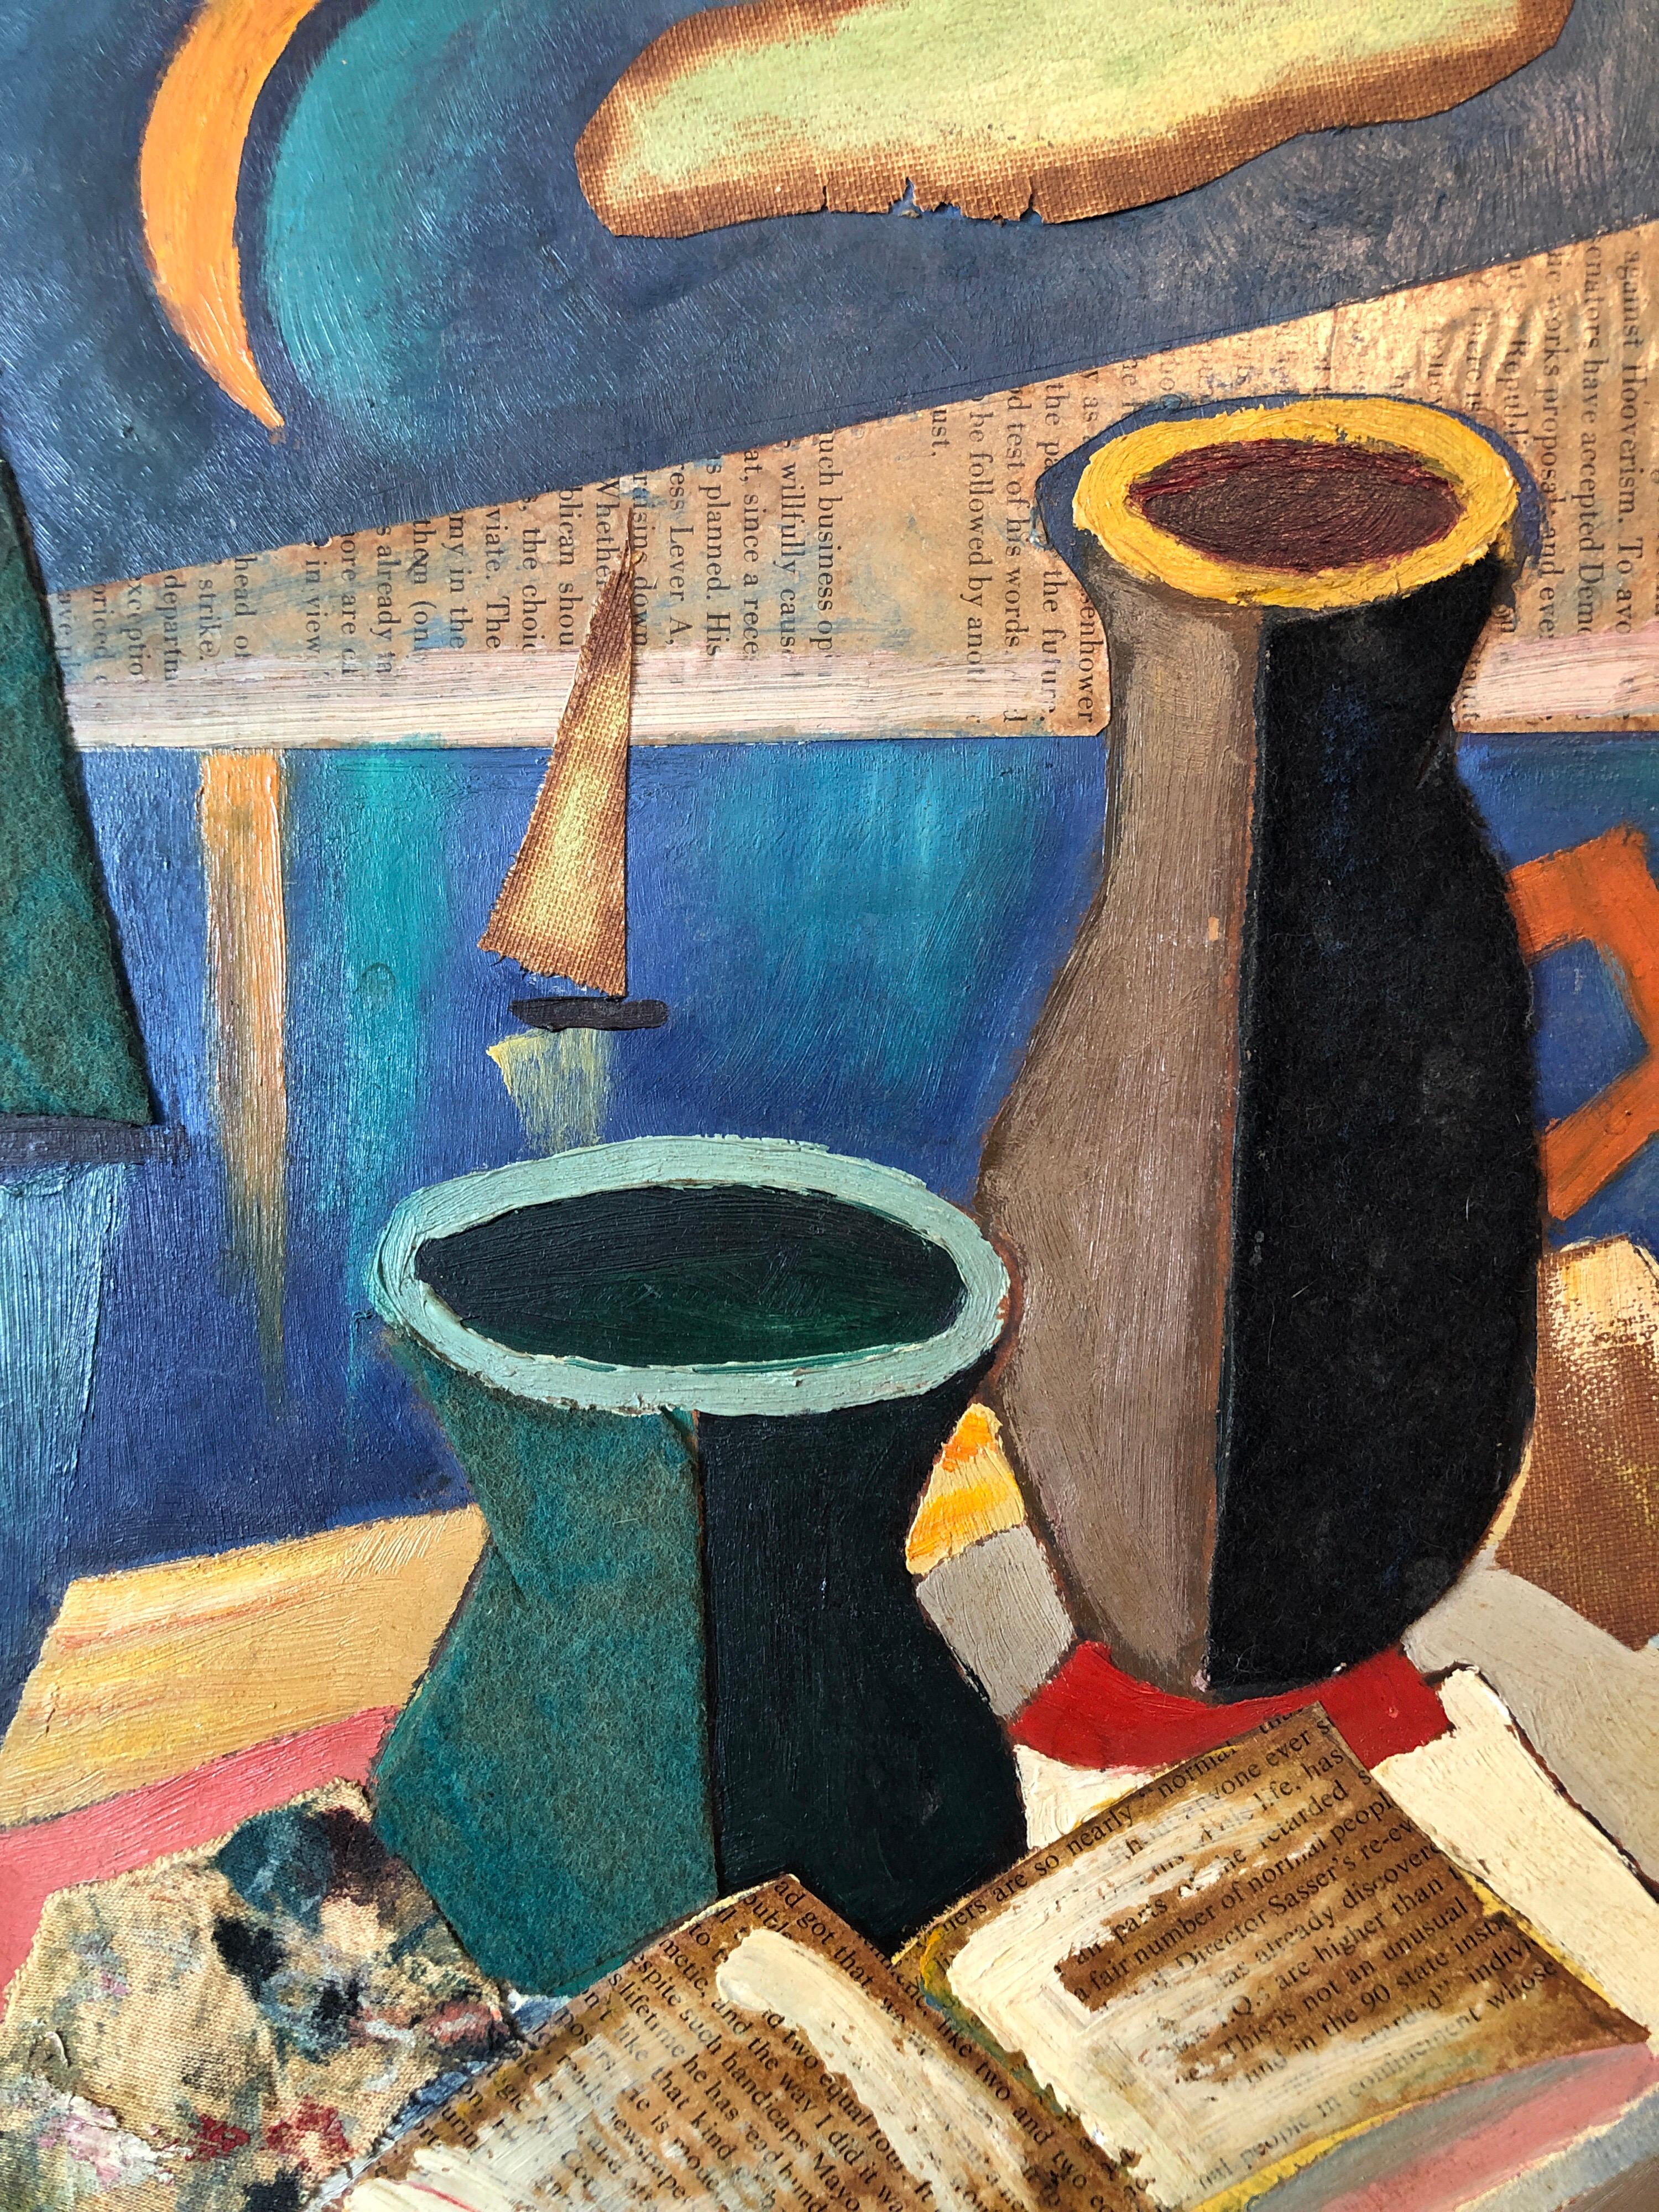 Europäische Collage Kubistisches Ölgemälde 1960 Surrealistisches Interieur mit Vase und Pfeife (Surrealismus), Painting, von Unknown